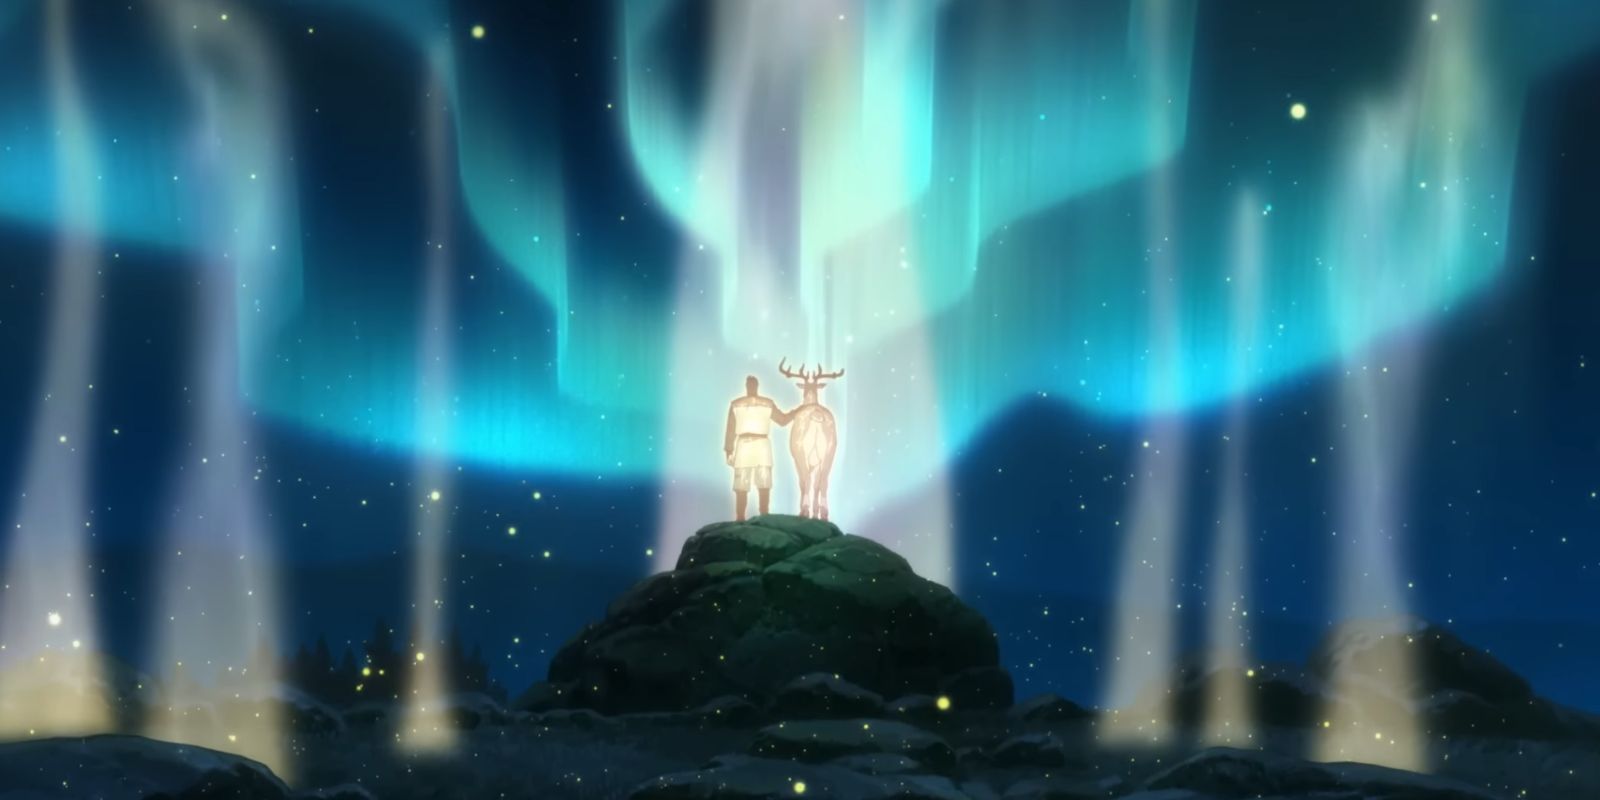 Van-und-ein-Piuika-aus-The-Deer-King-stehen-zusammen-und-beobachten-Lichter-am-Himmel